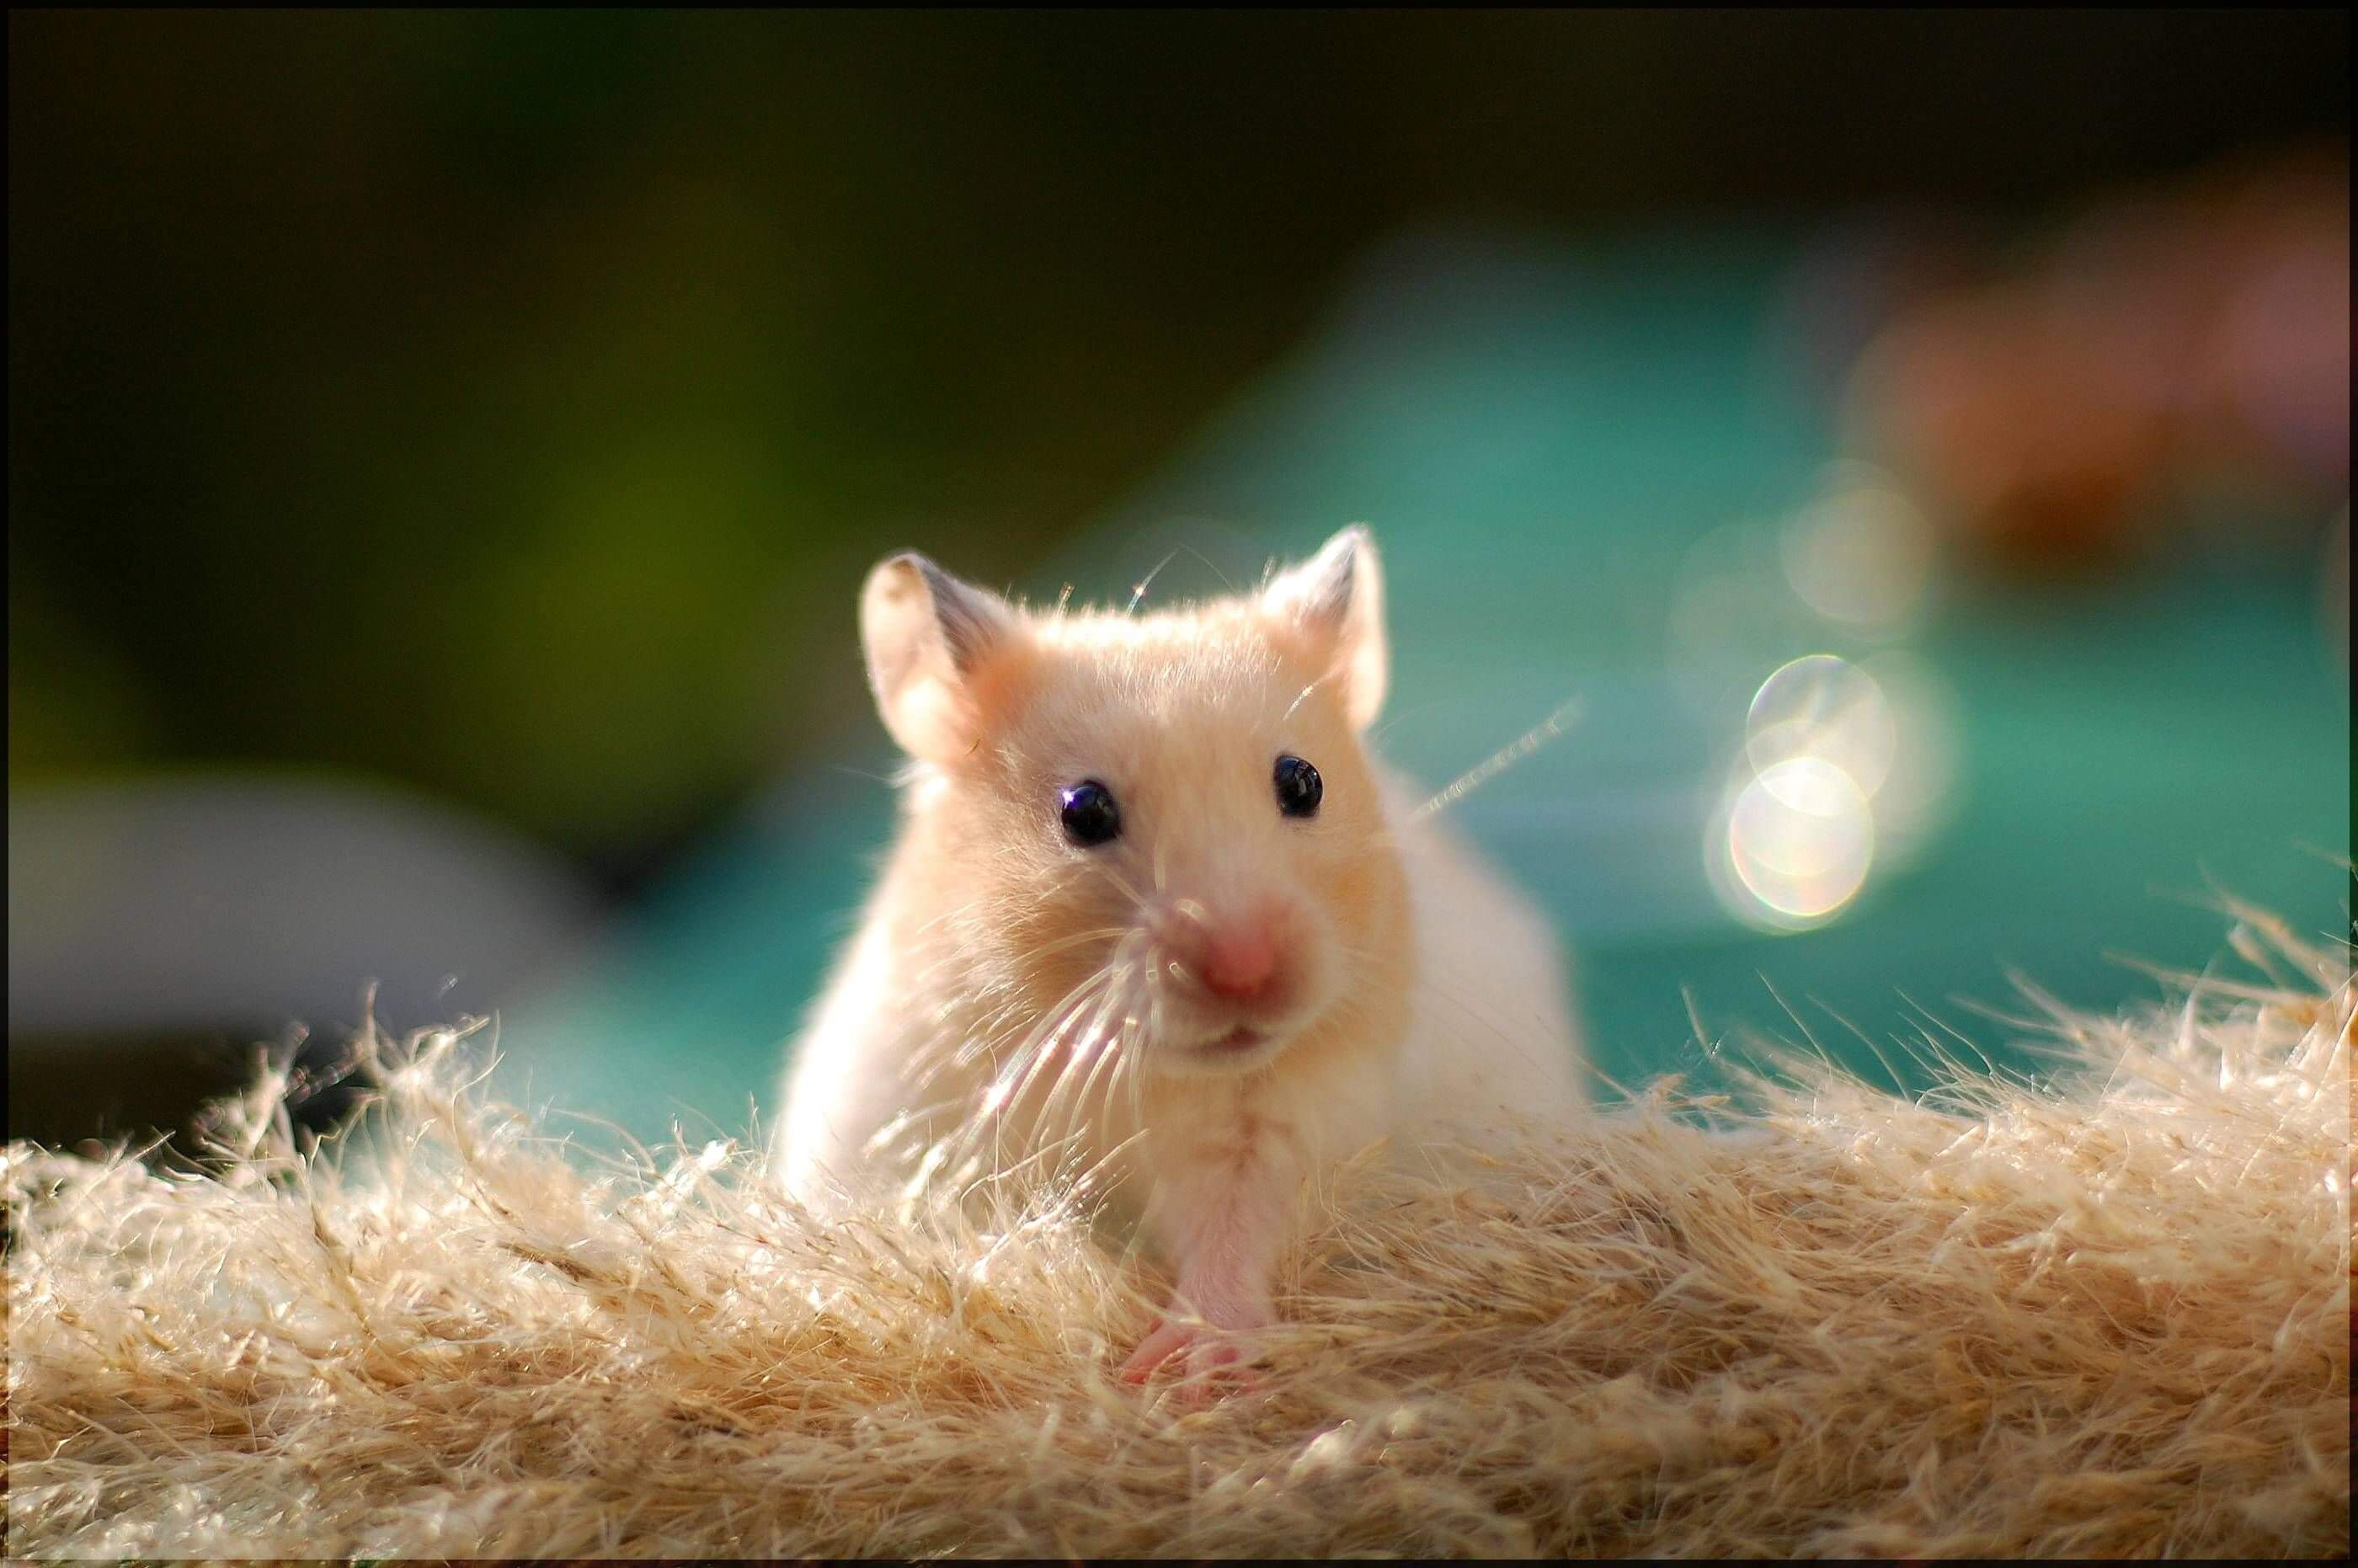 Pet Rat Care & Facts About Rats